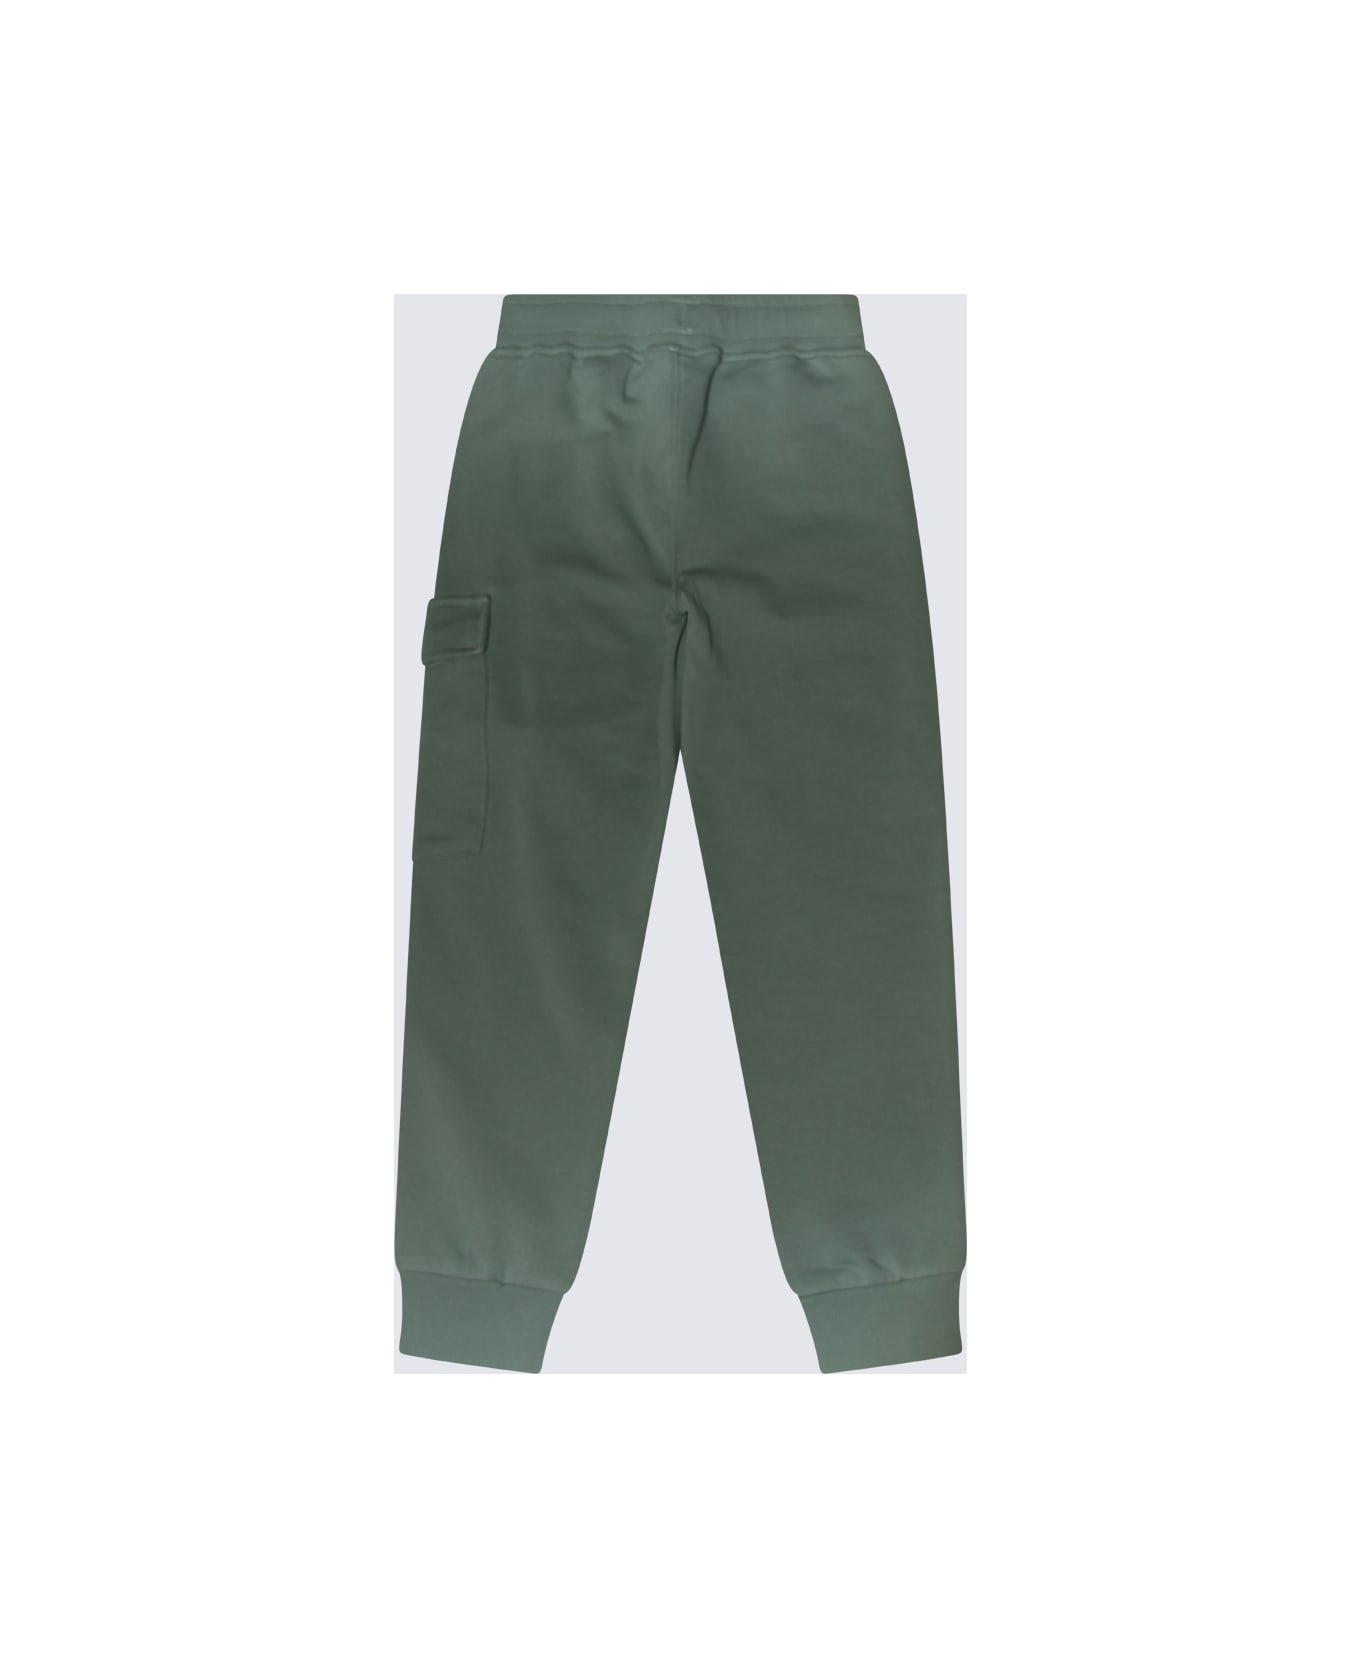 C.P. Company Green Cotton Pants - Green